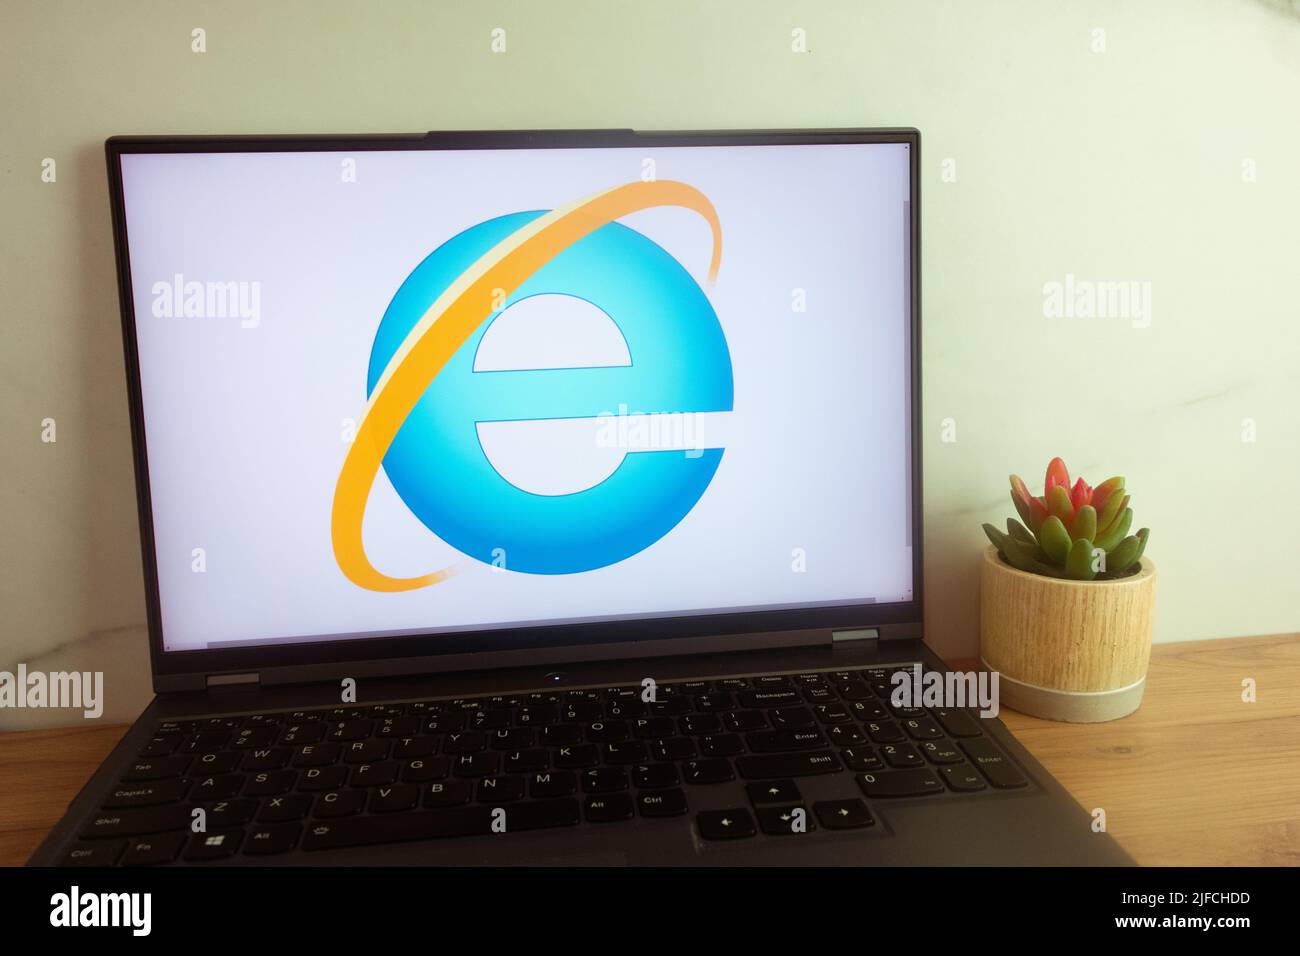 KONSKIE, POLAND - June 30, 2022: Internet Explorer logo displayed on laptop computer screen Stock Photo